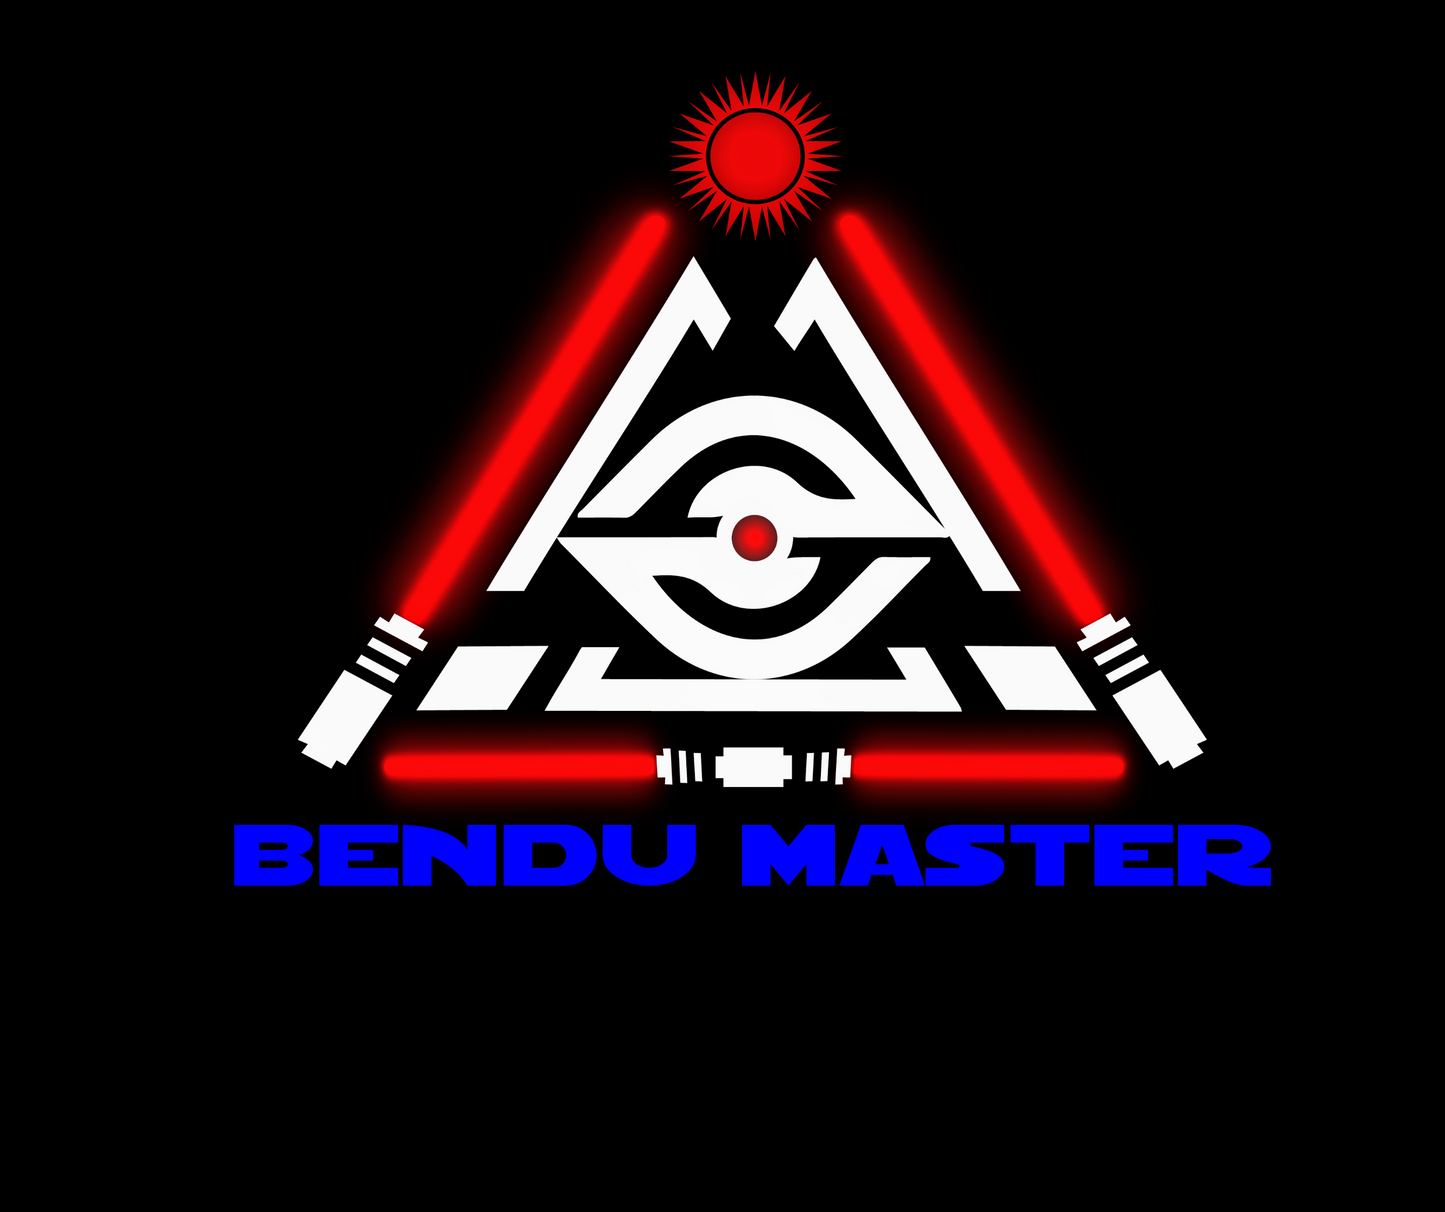 Bendu Master